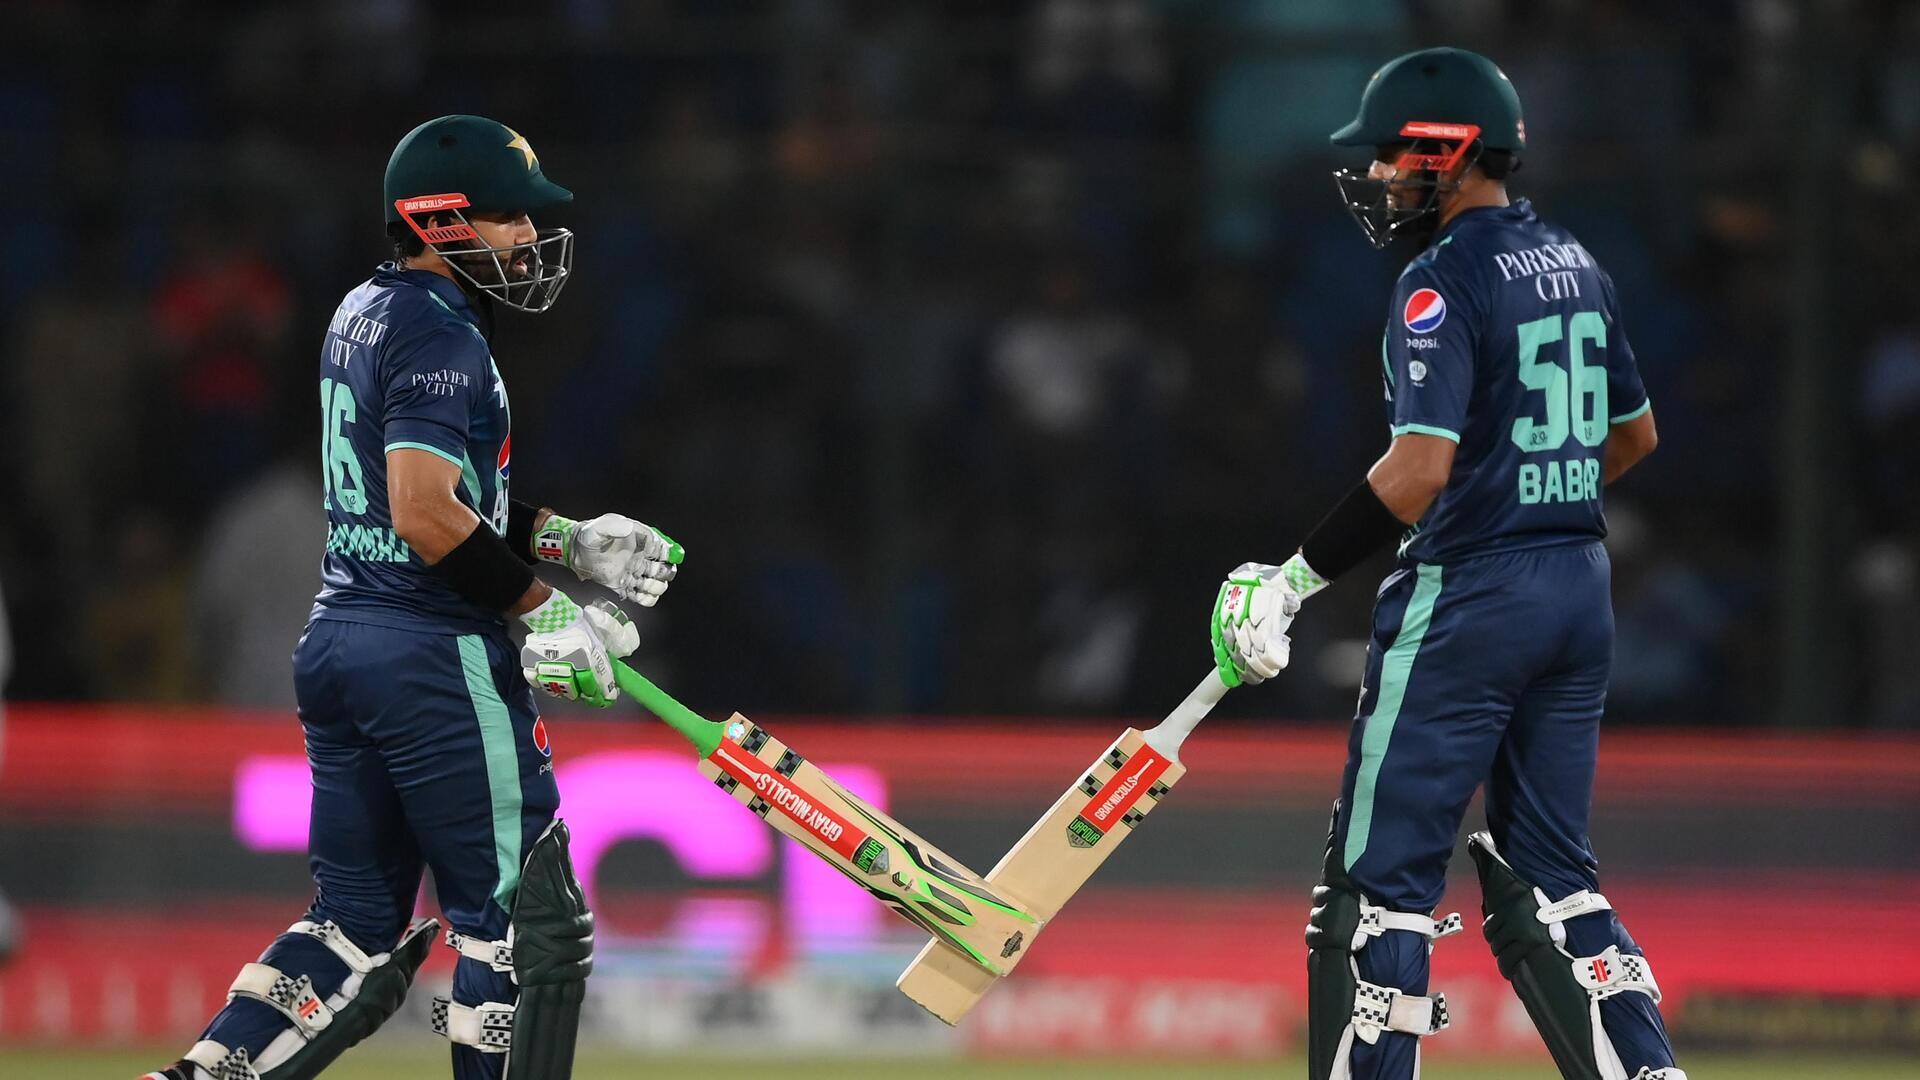 अफगानिस्तान बनाम पाकिस्तान: वनडे में एक-दूसरे के खिलाफ कैसा रहा है प्रदर्शन? जानिए आंकड़े 